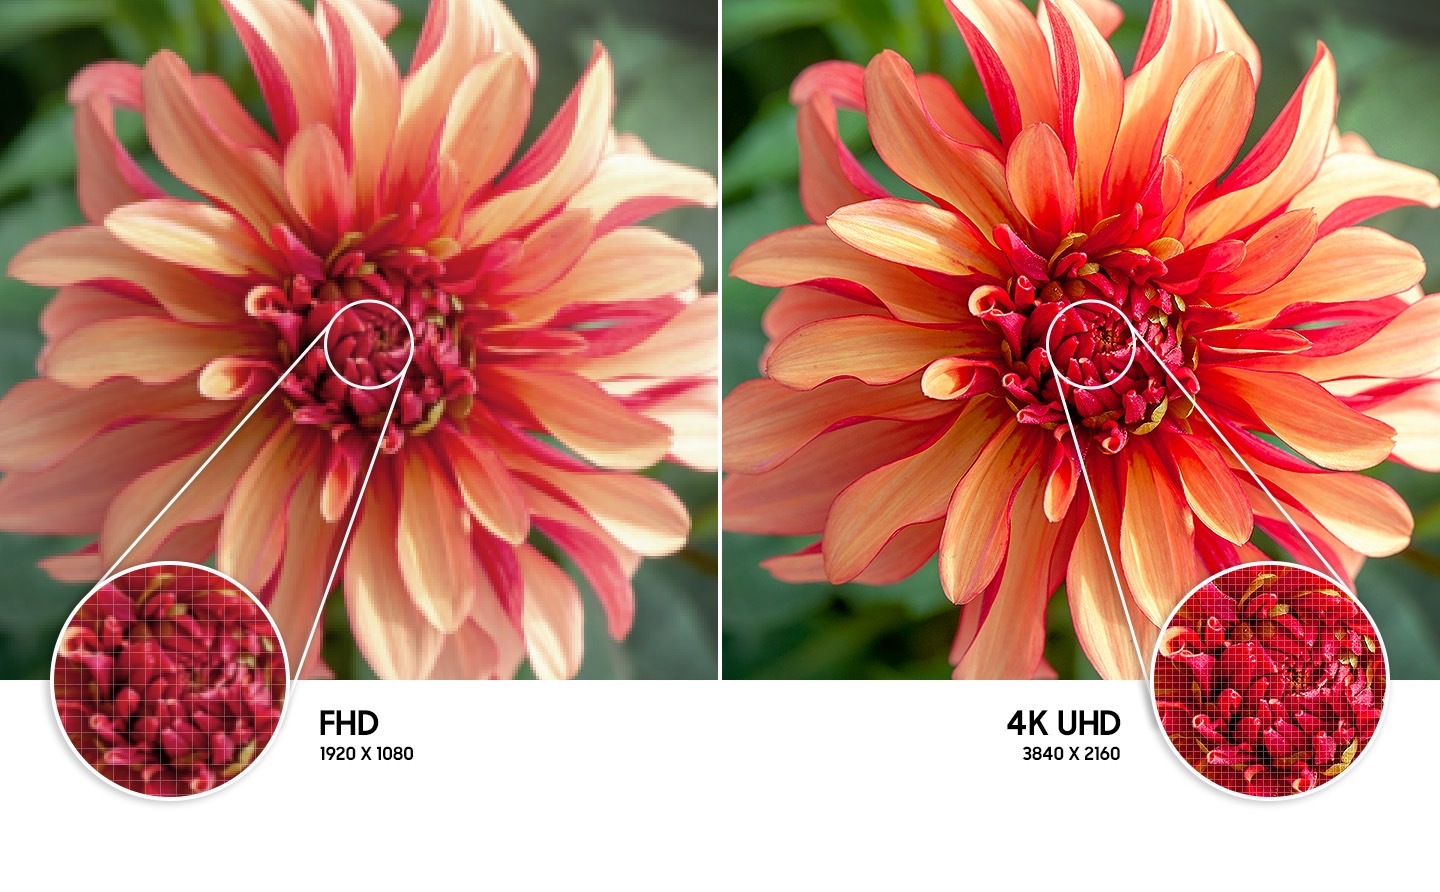 Hình ảnh bông hoa bên phải so với bên trái cho thấy độ phân giải hình ảnh chất lượng cao hơn được tạo bởi công nghệ 4K UHD.